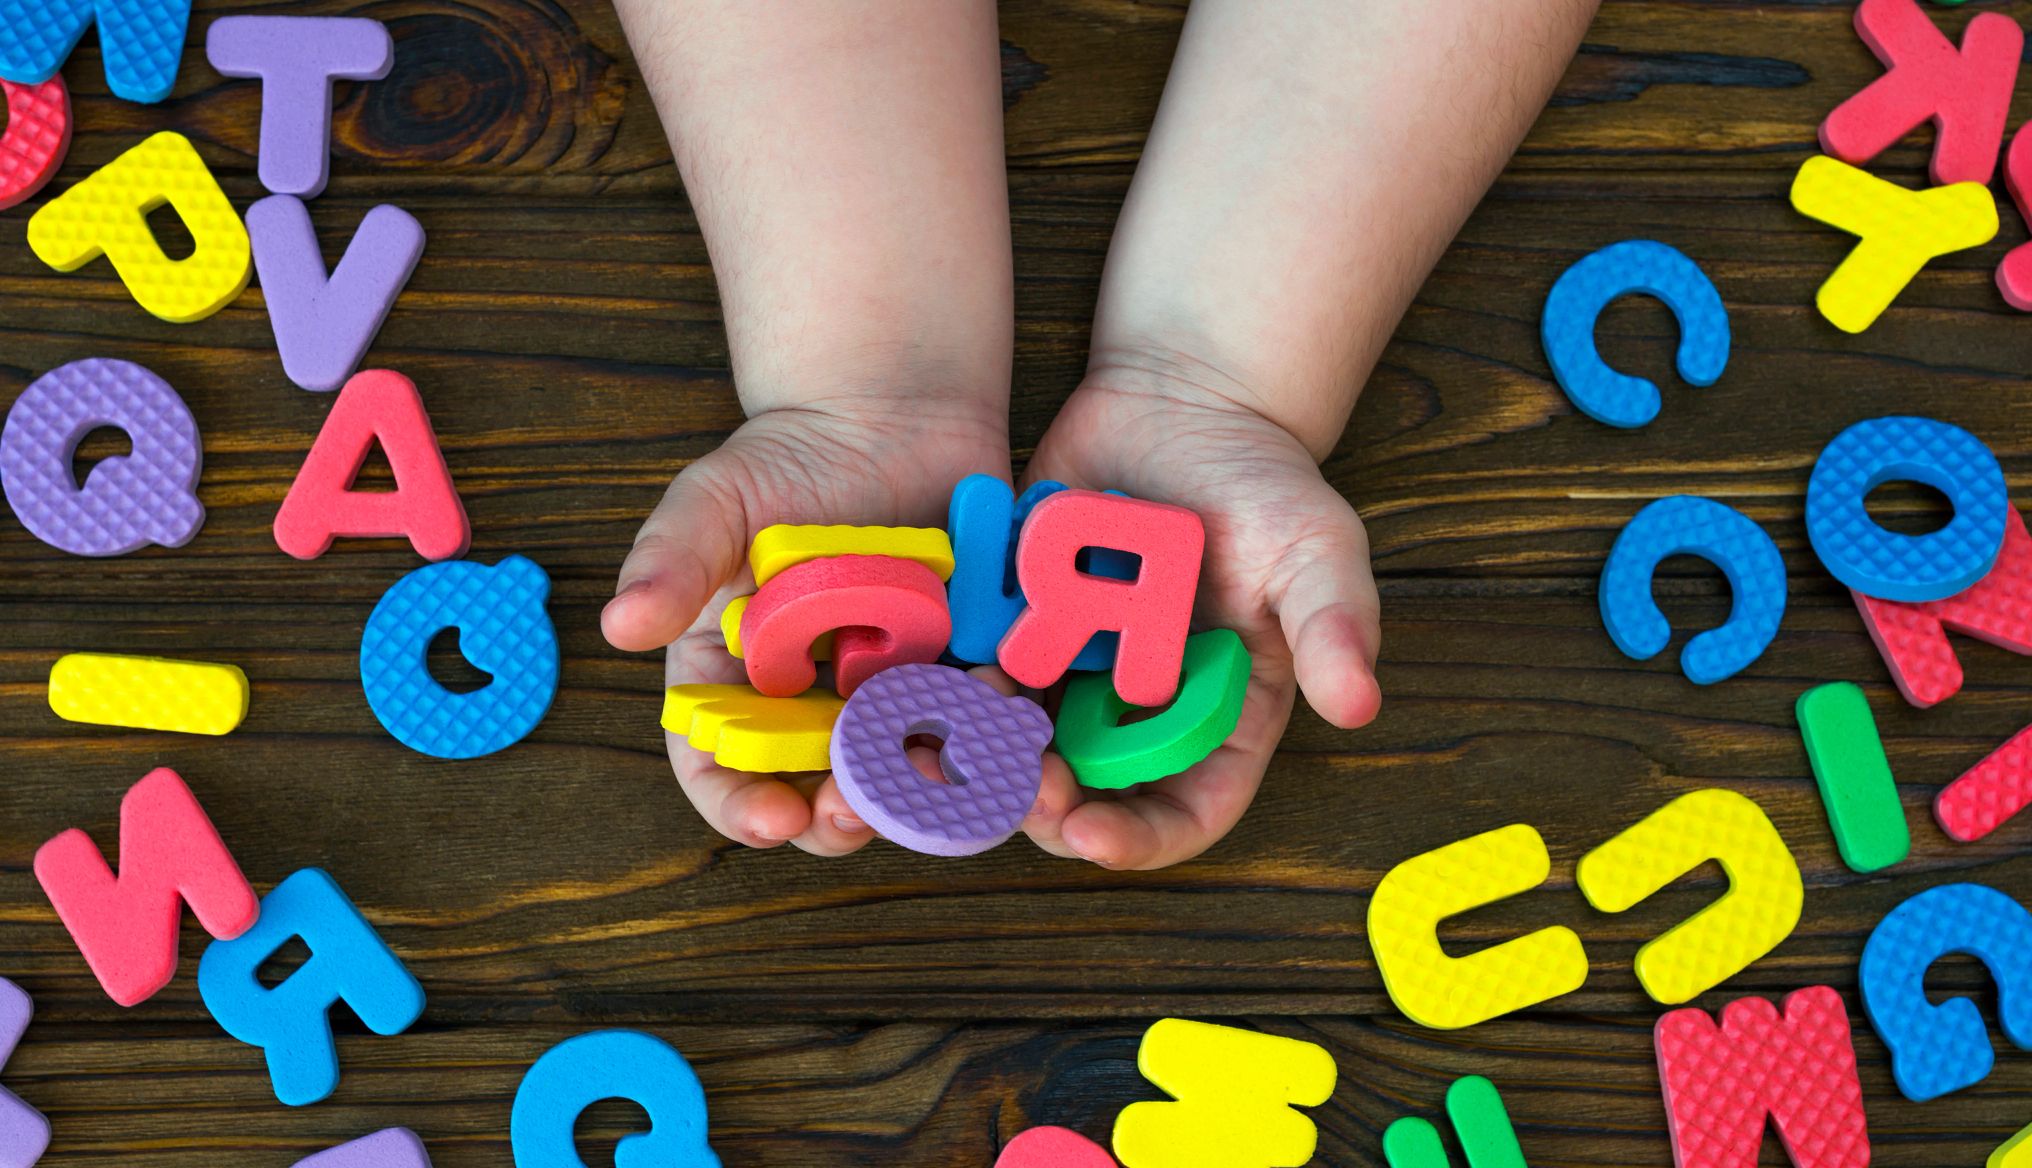 letras del alfabeto inglés en las manos de un bebé sobre fondo de madera